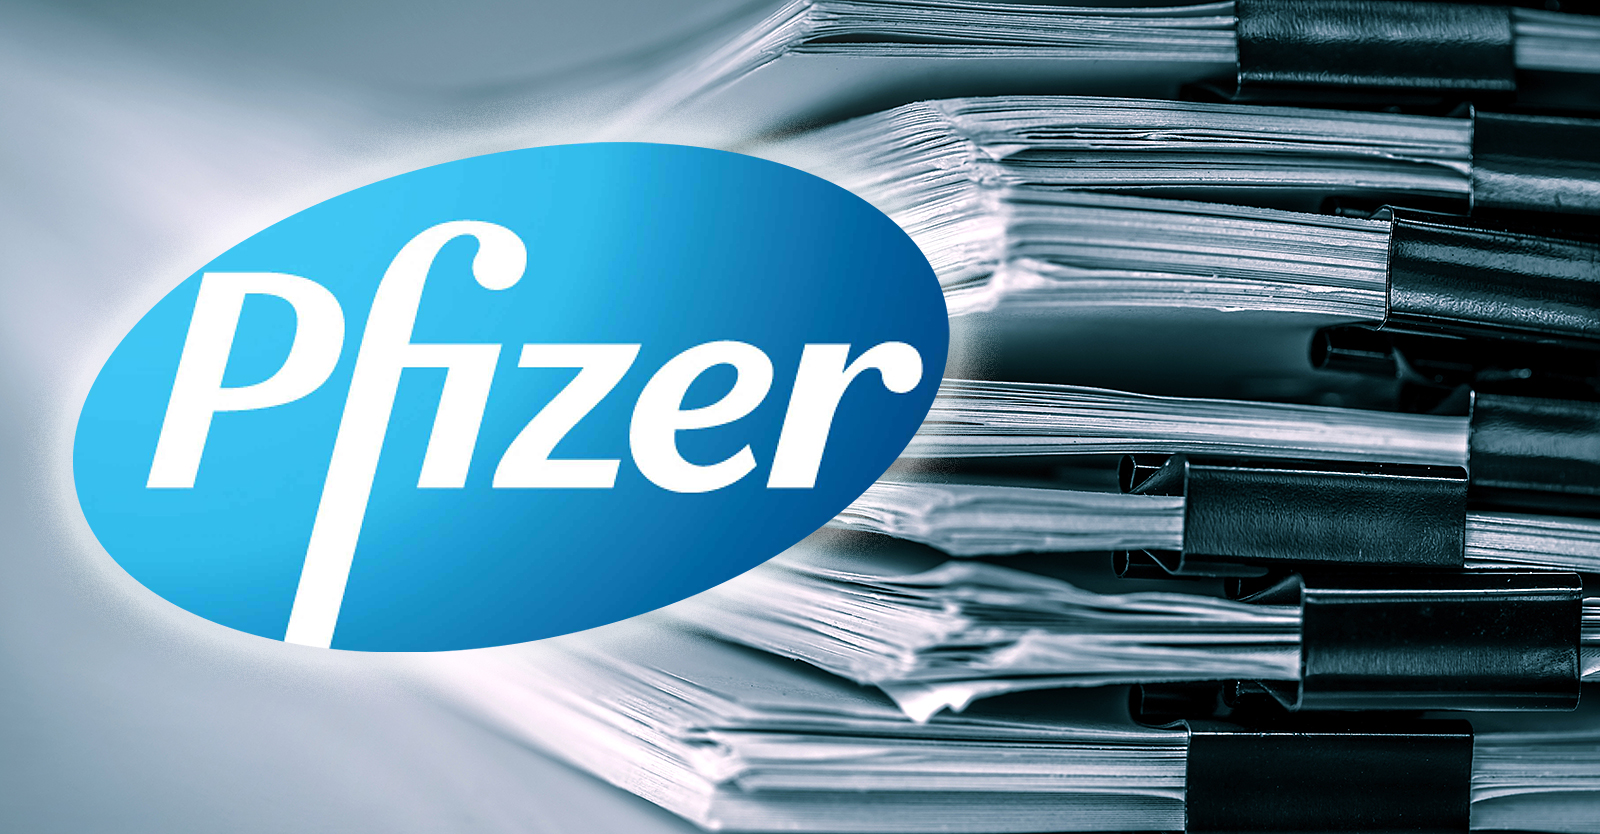 Pfizer stellt mehr als 600 Mitarbeiter ein, um Impfschadensmeldungen zu bearbeiten, wie aus Dokumenten hervorgeht